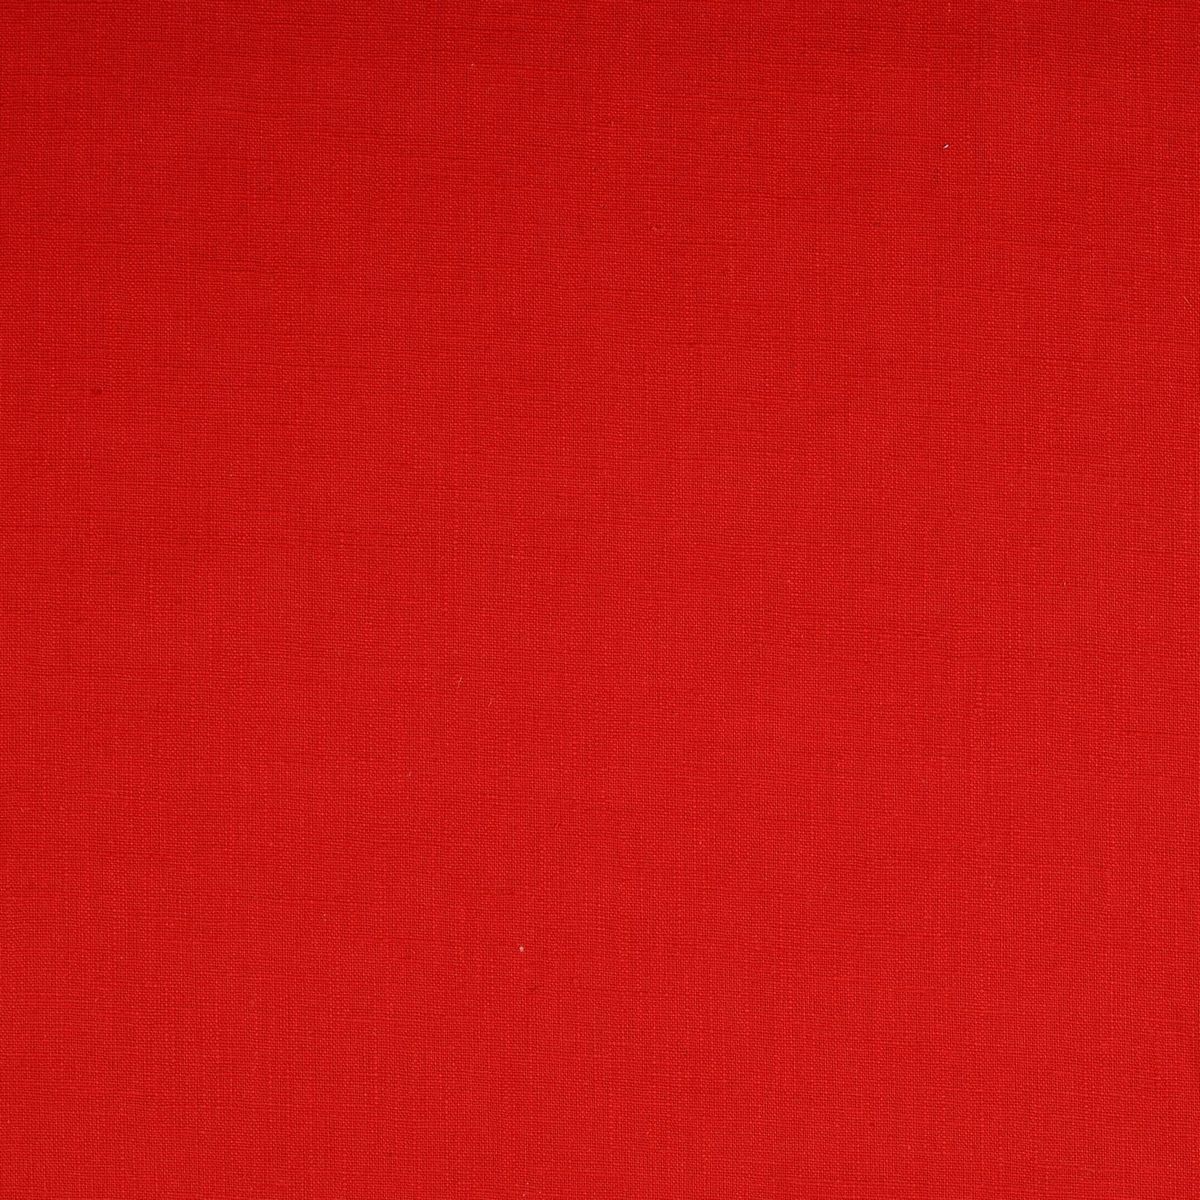 Crimson Fabric by Chatham Glyn